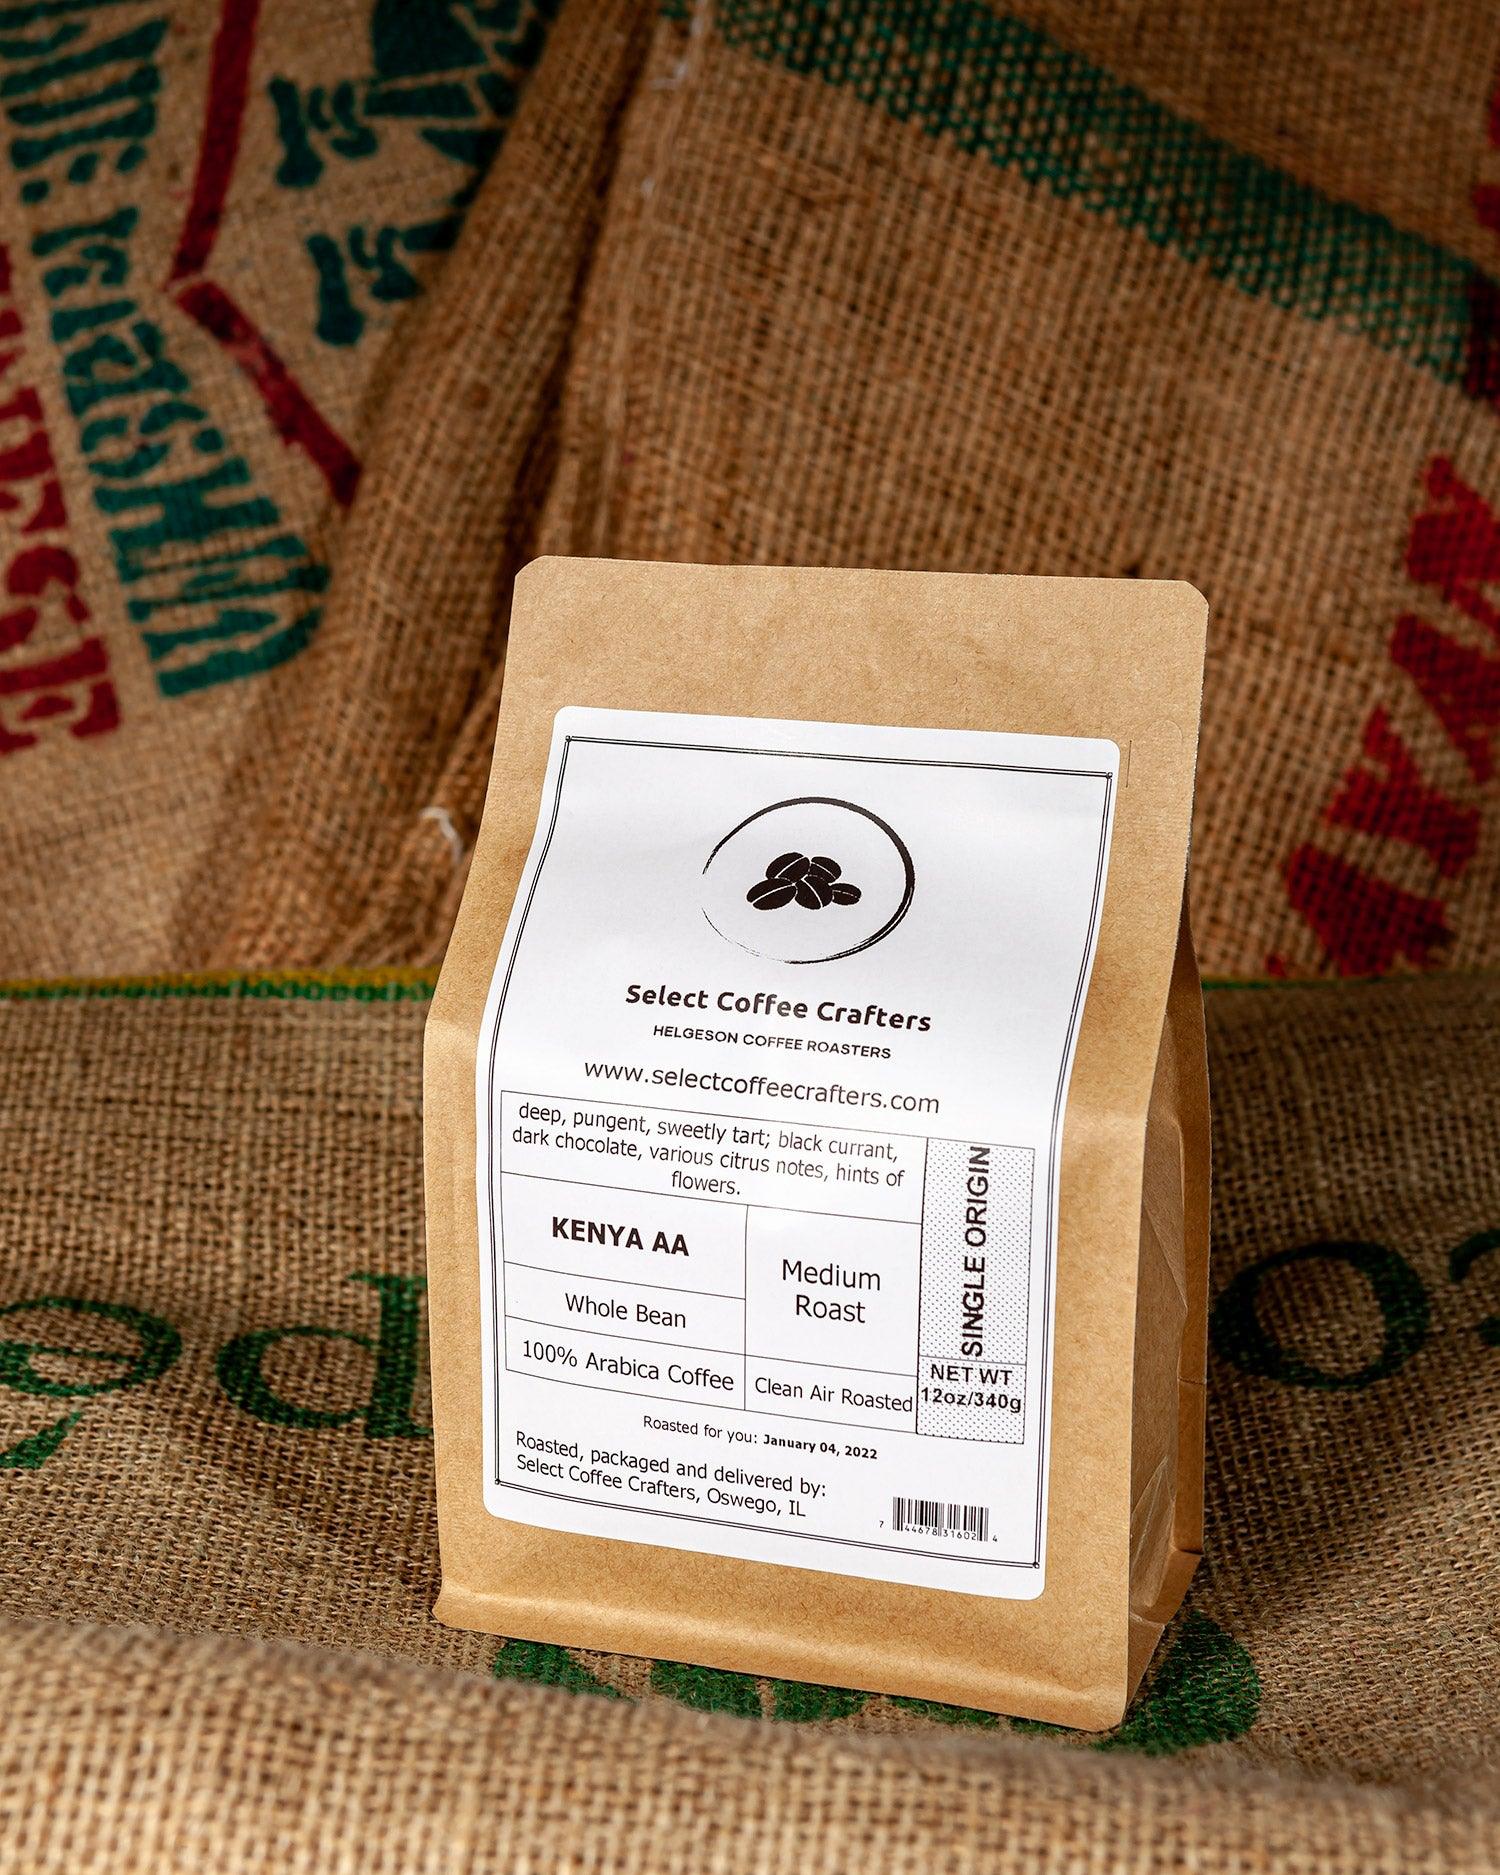 Kenya AA - Select Coffee Crafters LLC